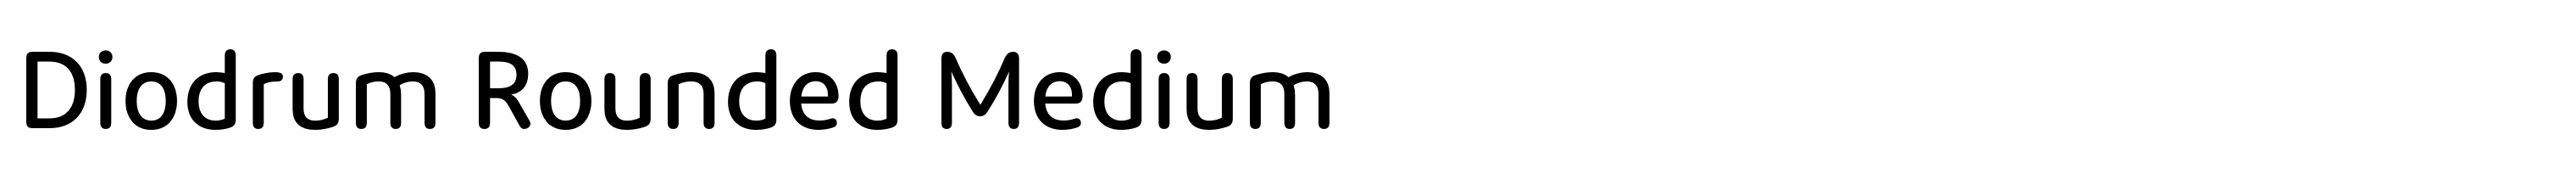 Diodrum Rounded Medium